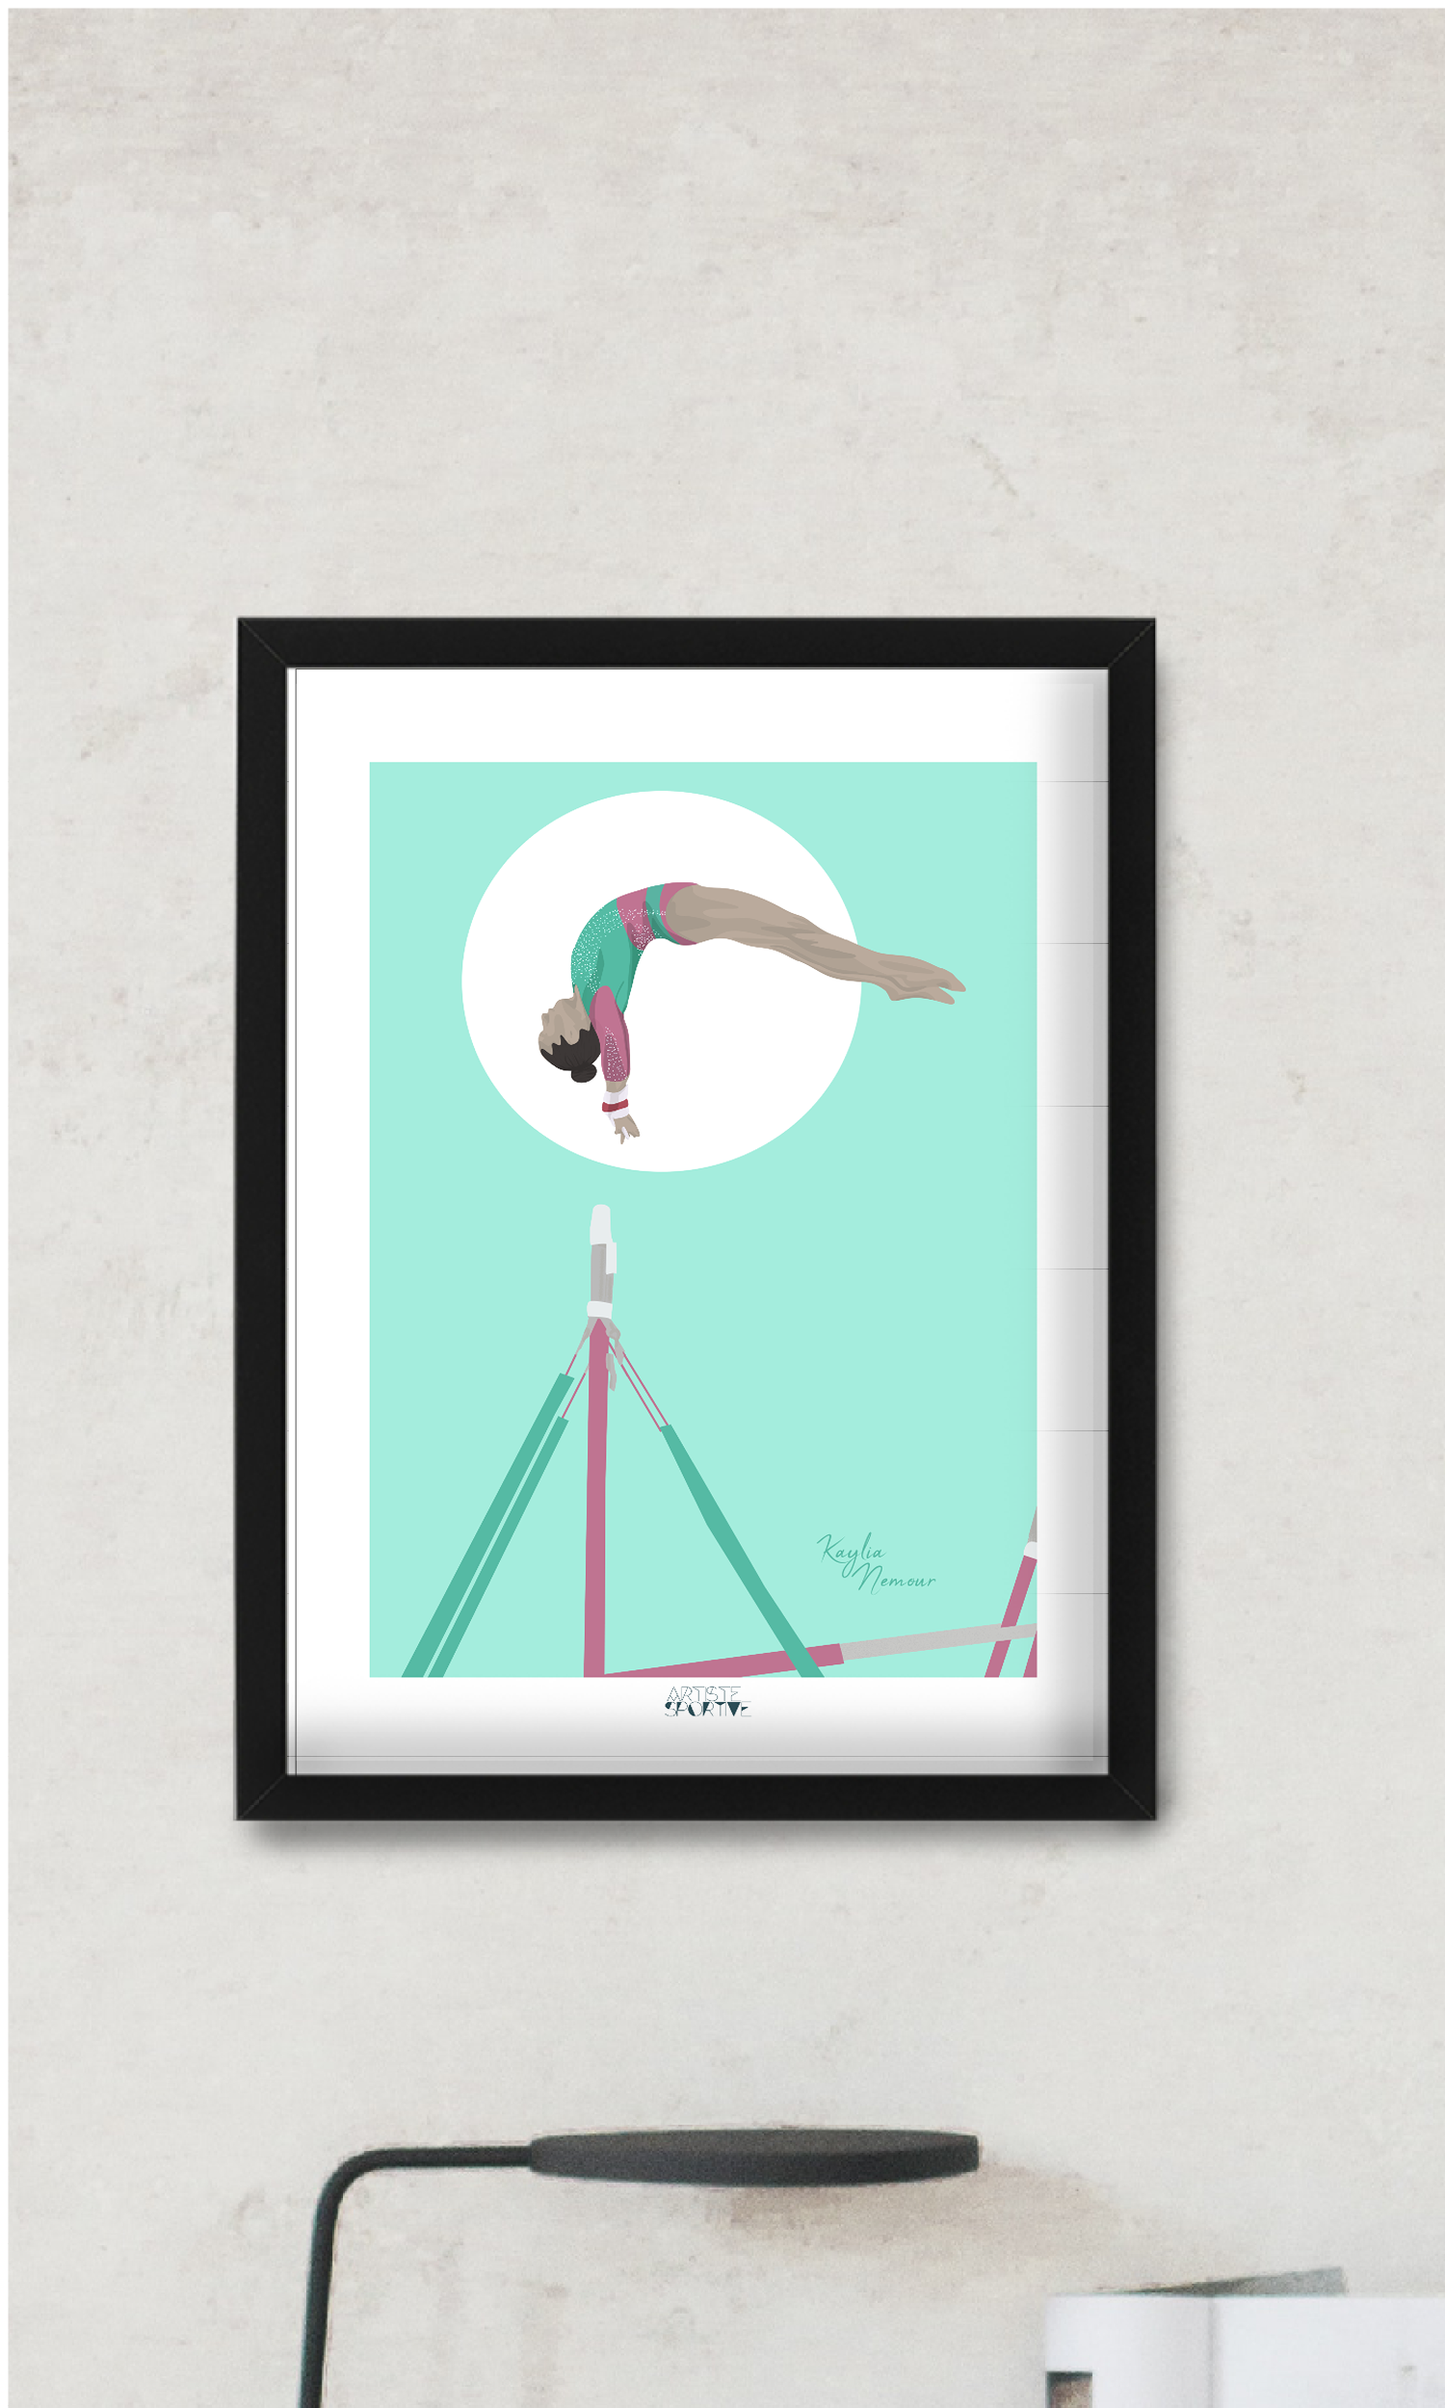 Affiche Gymnastique "Les Barres" - Collection Kaylia Nemour